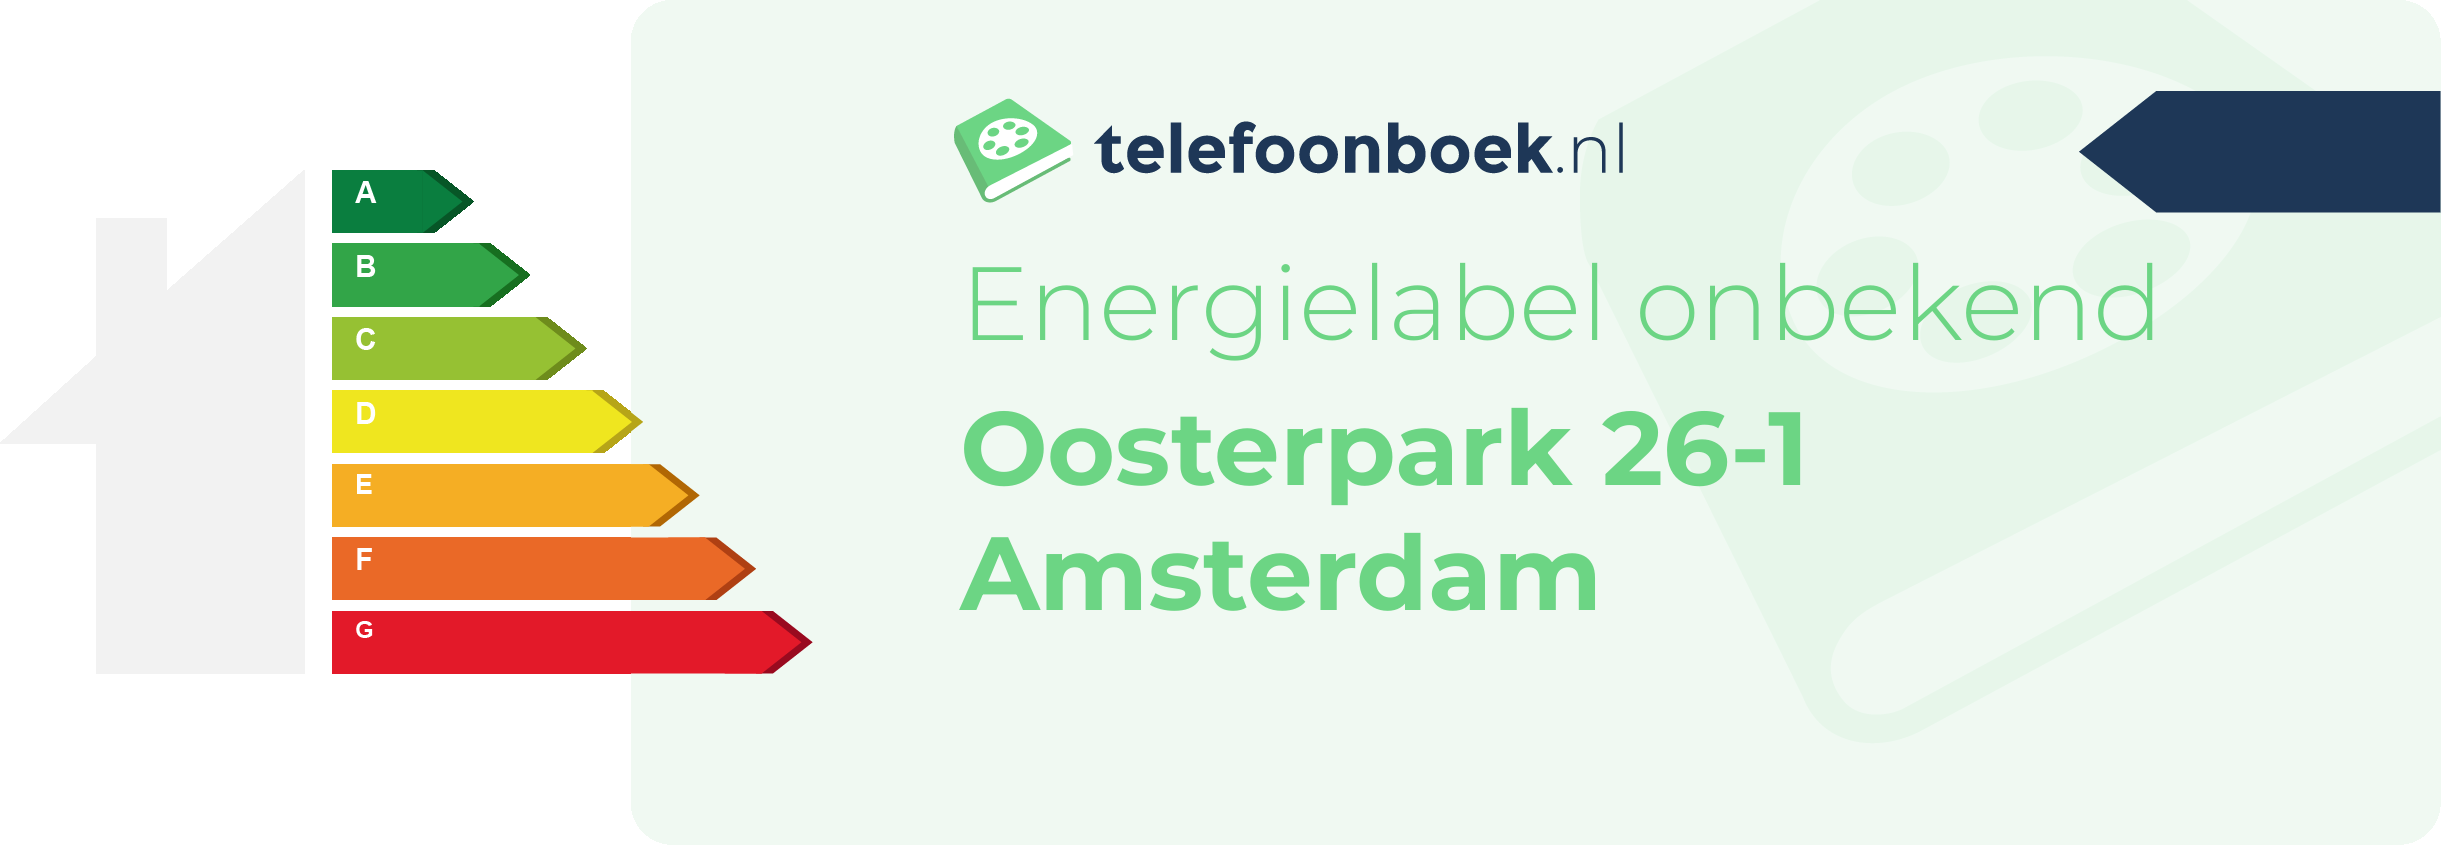 Energielabel Oosterpark 26-1 Amsterdam